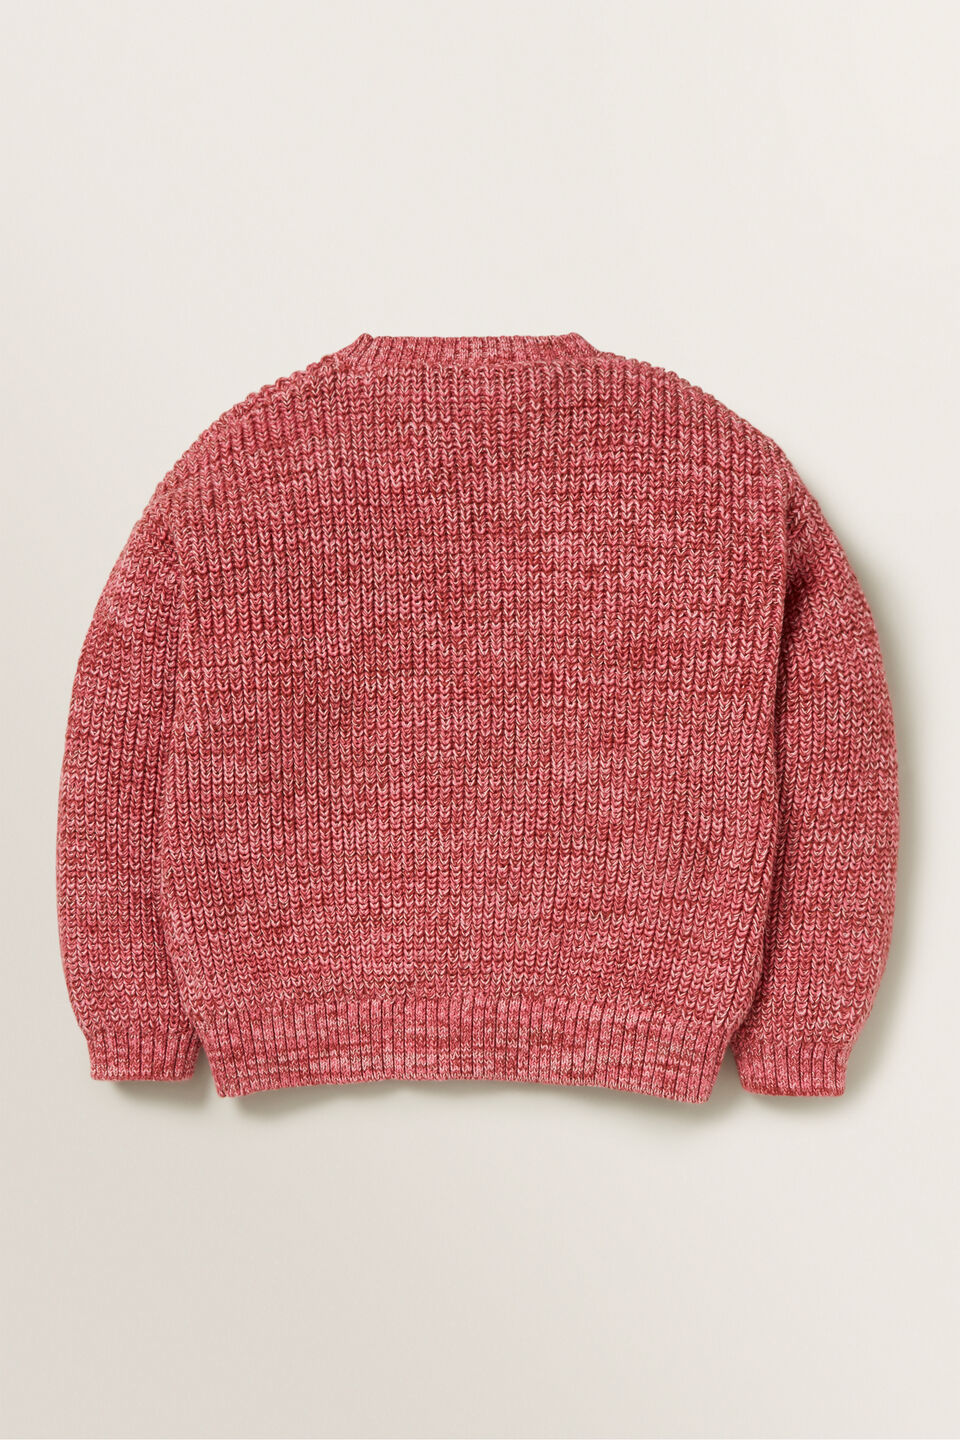 Mixy Sweater  